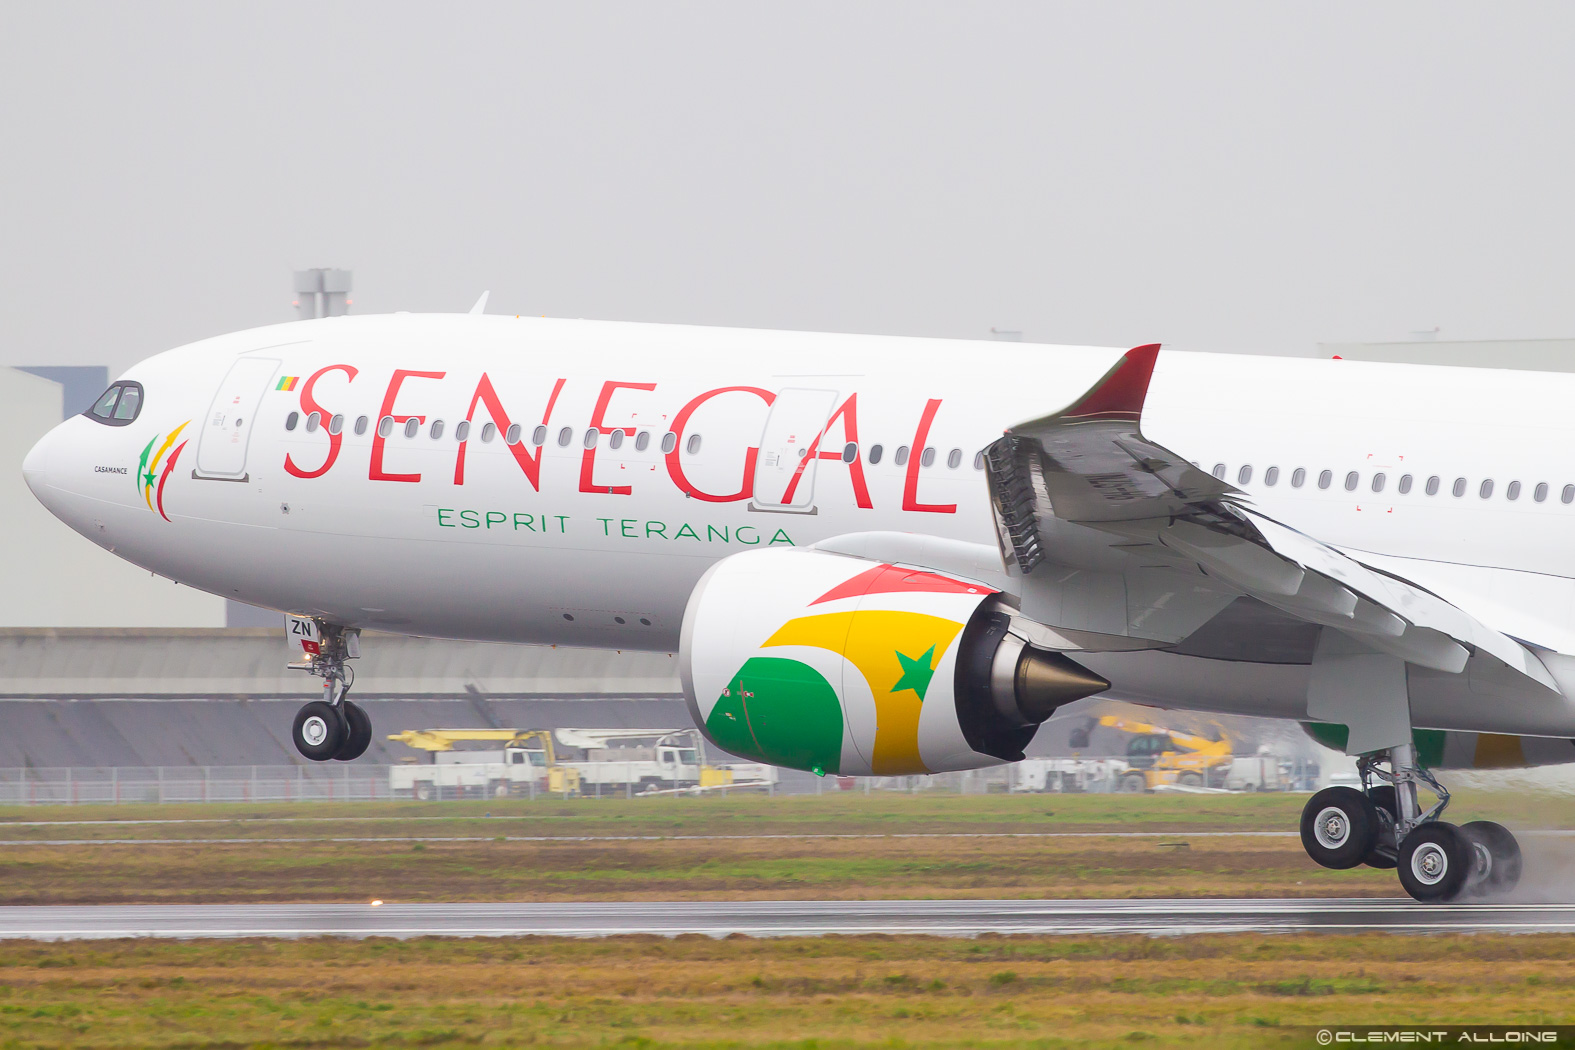 Avion A330 Neo - Air Sénégal, Avion Casamance, contrat de location ACMI entre Hi Fly et Airhub Airlines